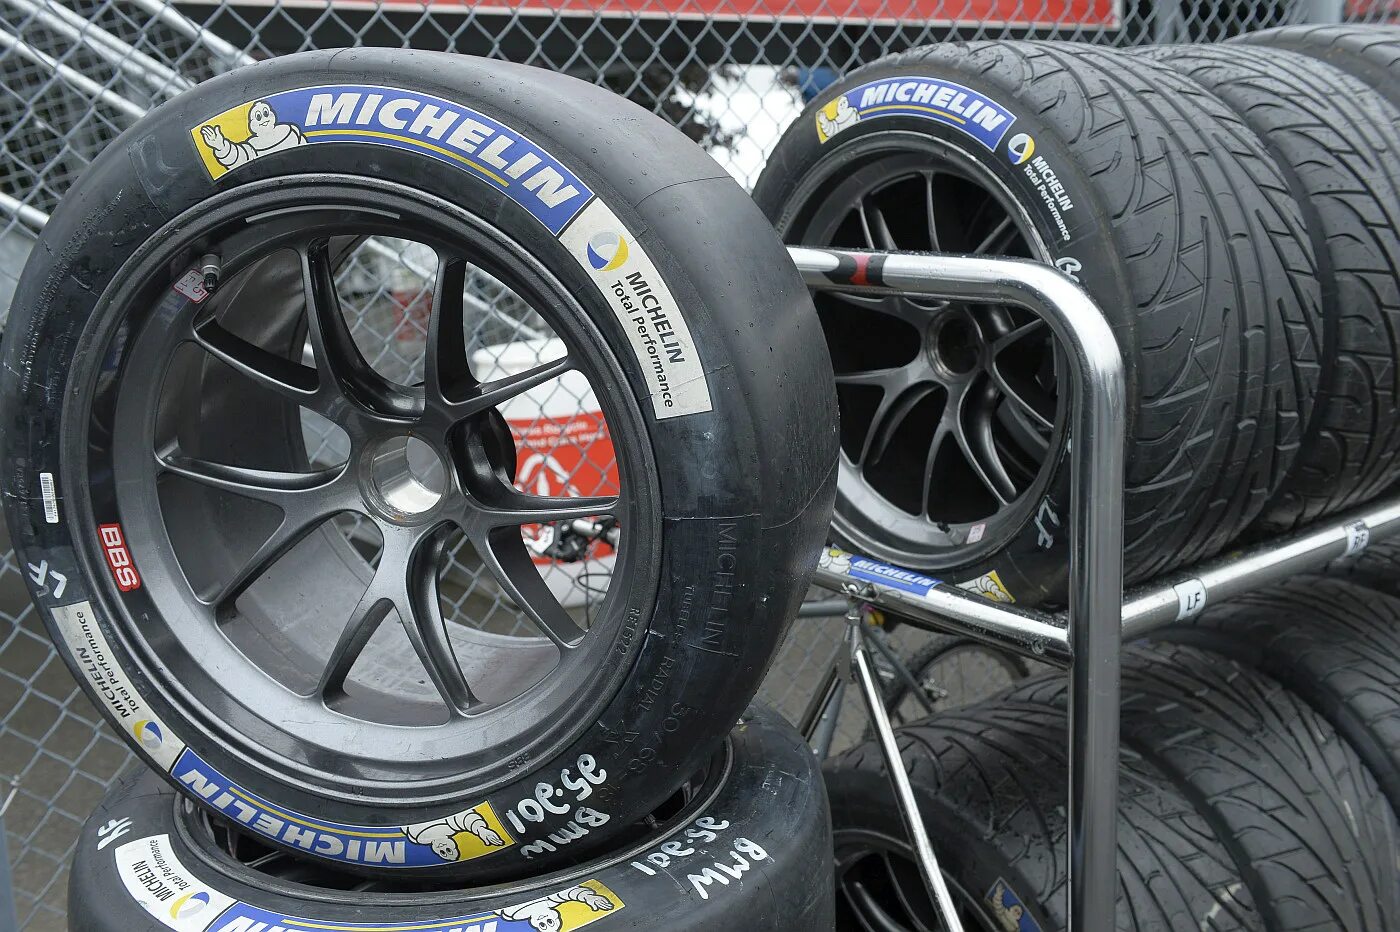 Michelin Racing Tire 31/71-18. Michelin Slick Tyres. Michelin Race 30/68-18. Michelin Motorsport Tire.